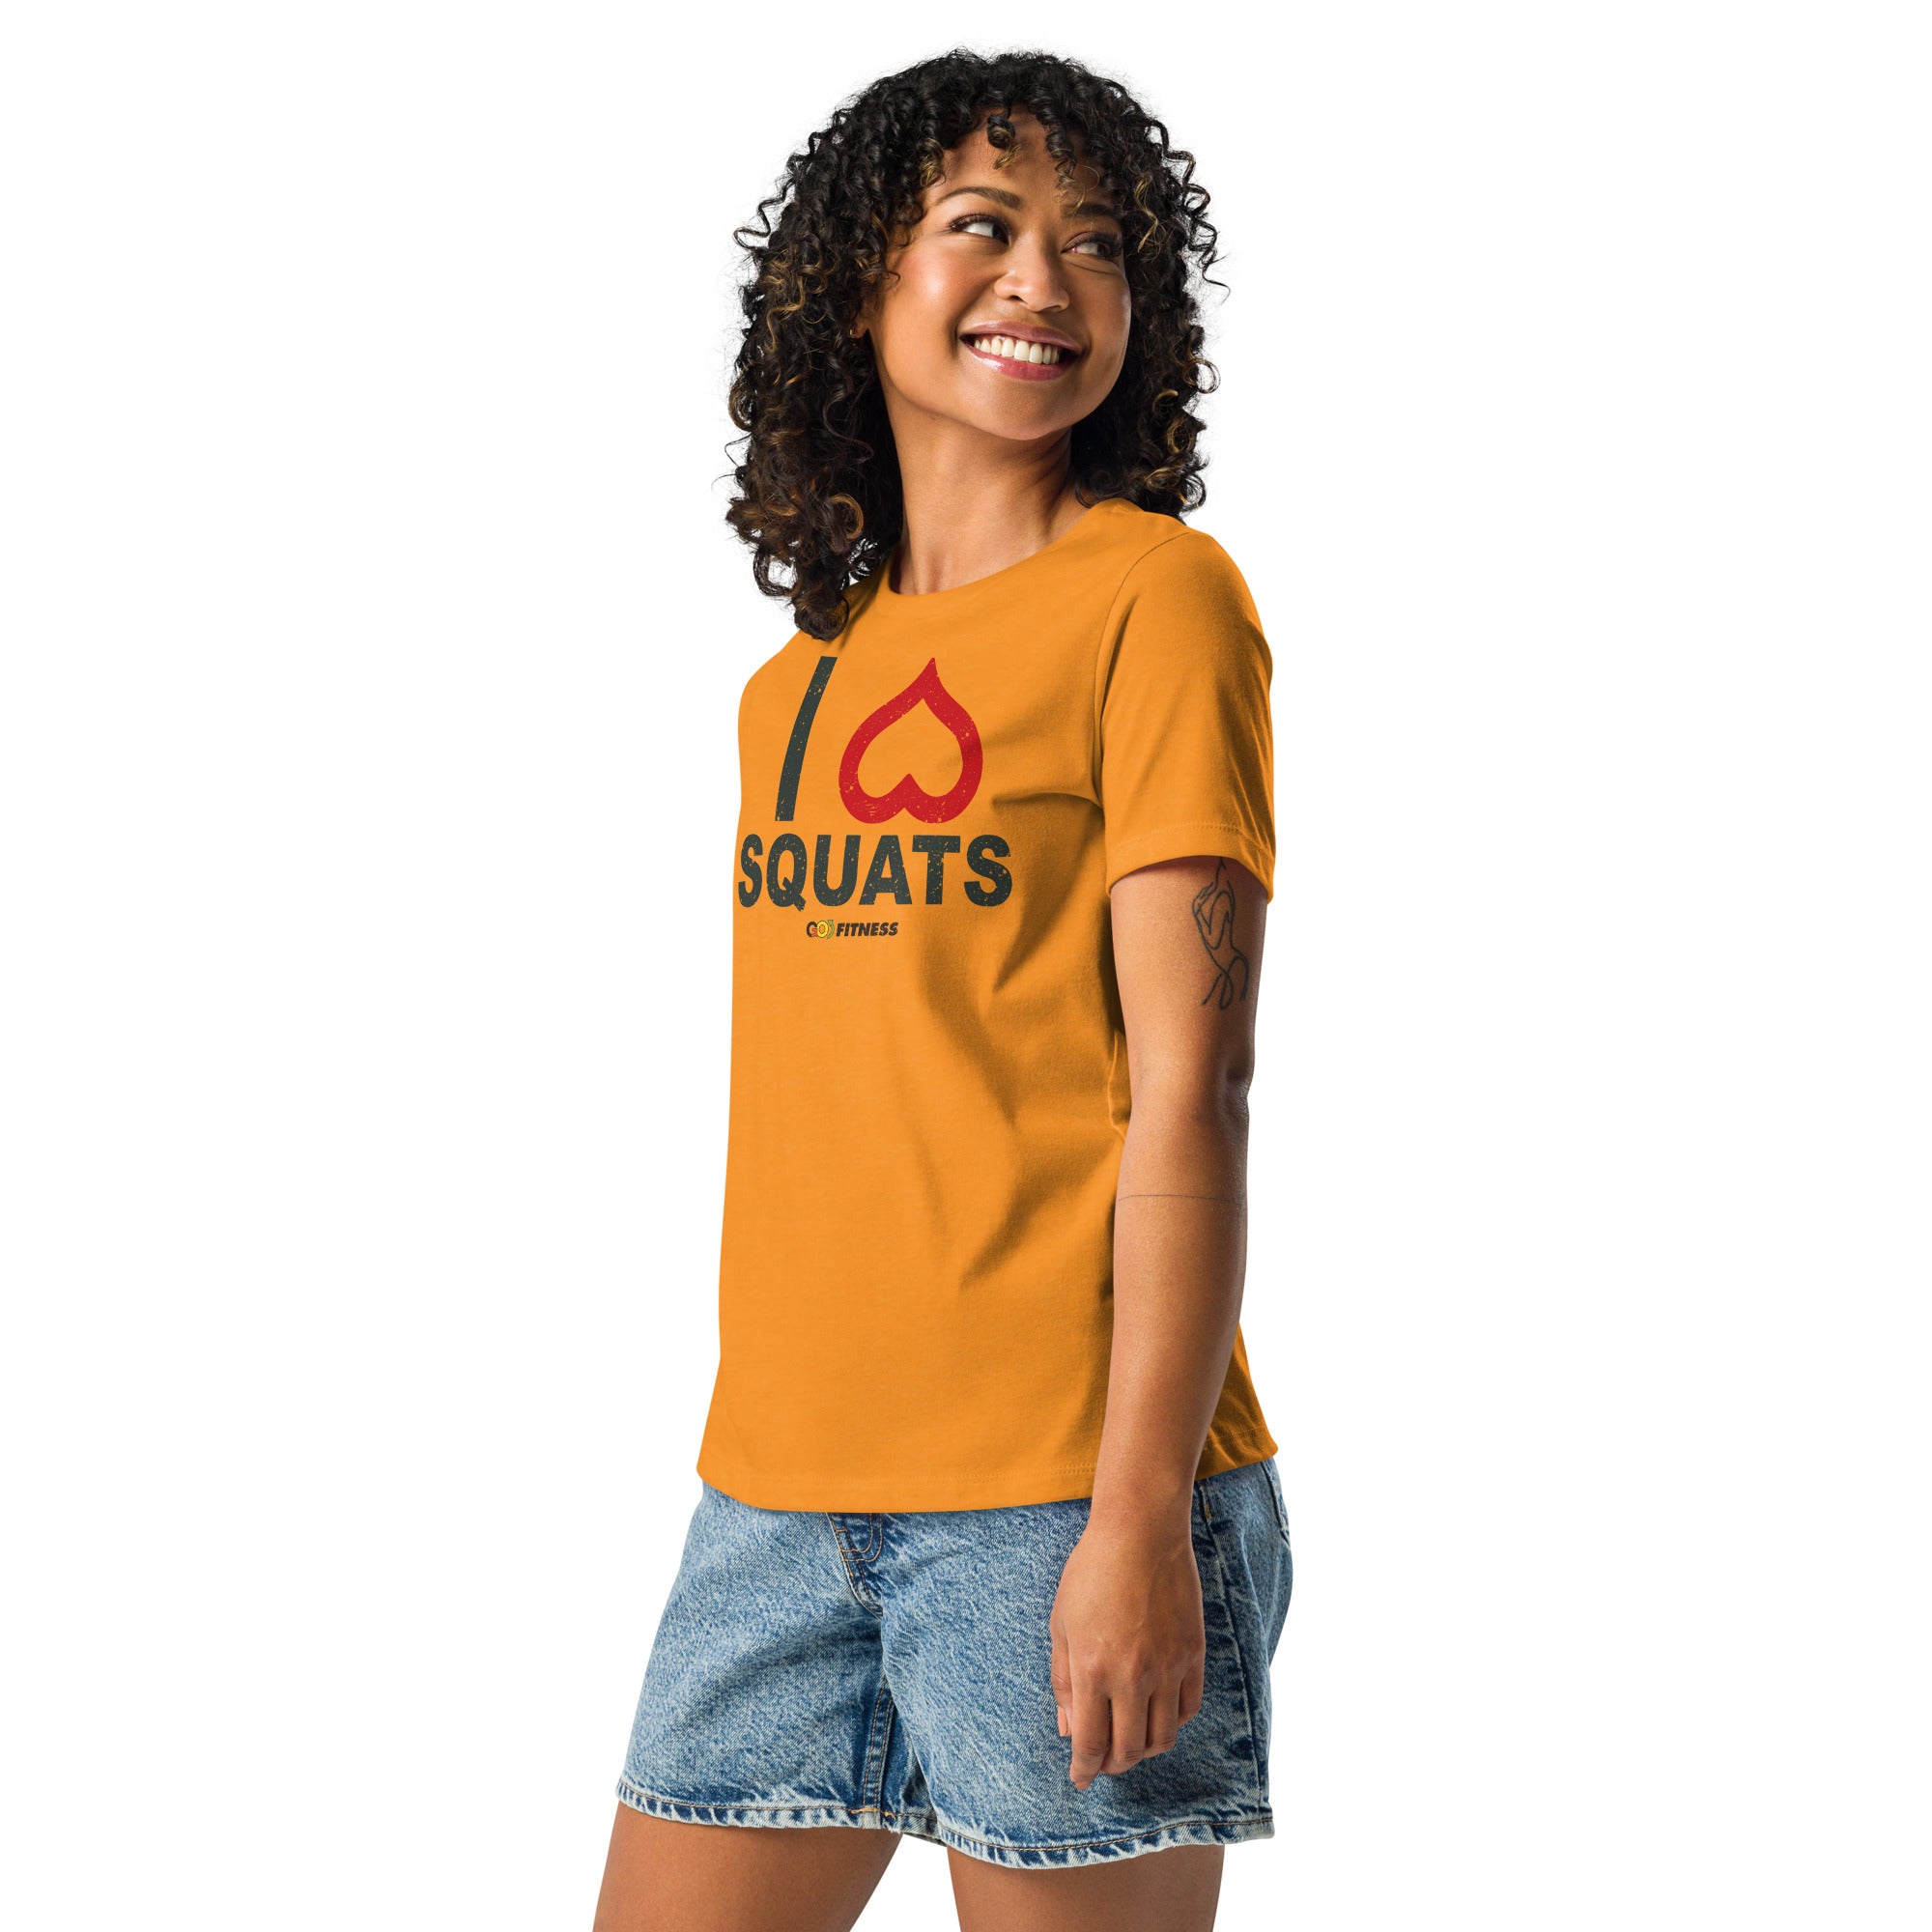 I Heart Squats Light Women's Relaxed T-Shirt